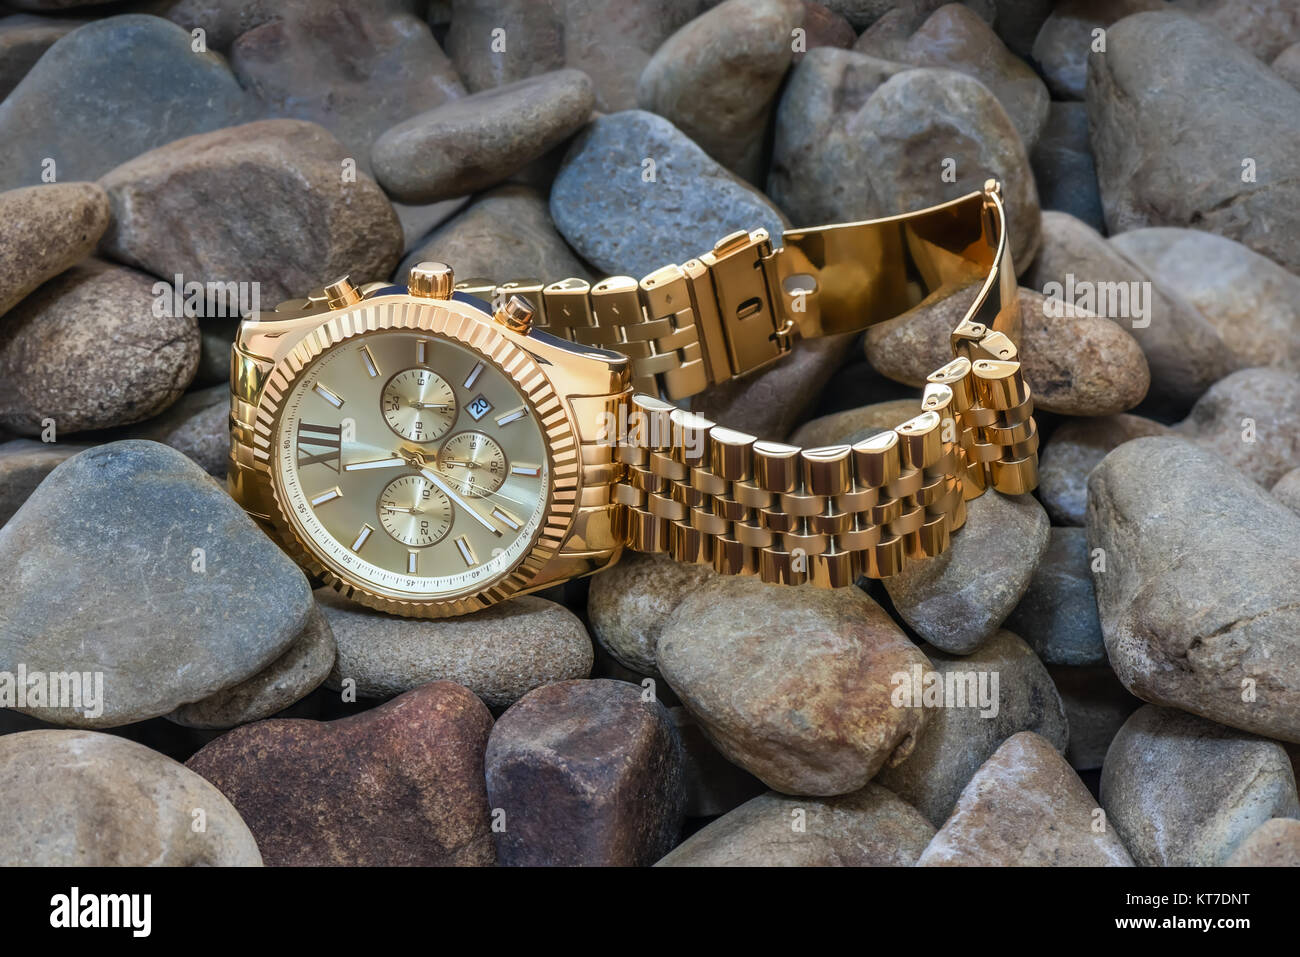 Close-up. Nouveau cher avec une montre en or bracelet métal jaune se trouvent sur des pierres grises Banque D'Images